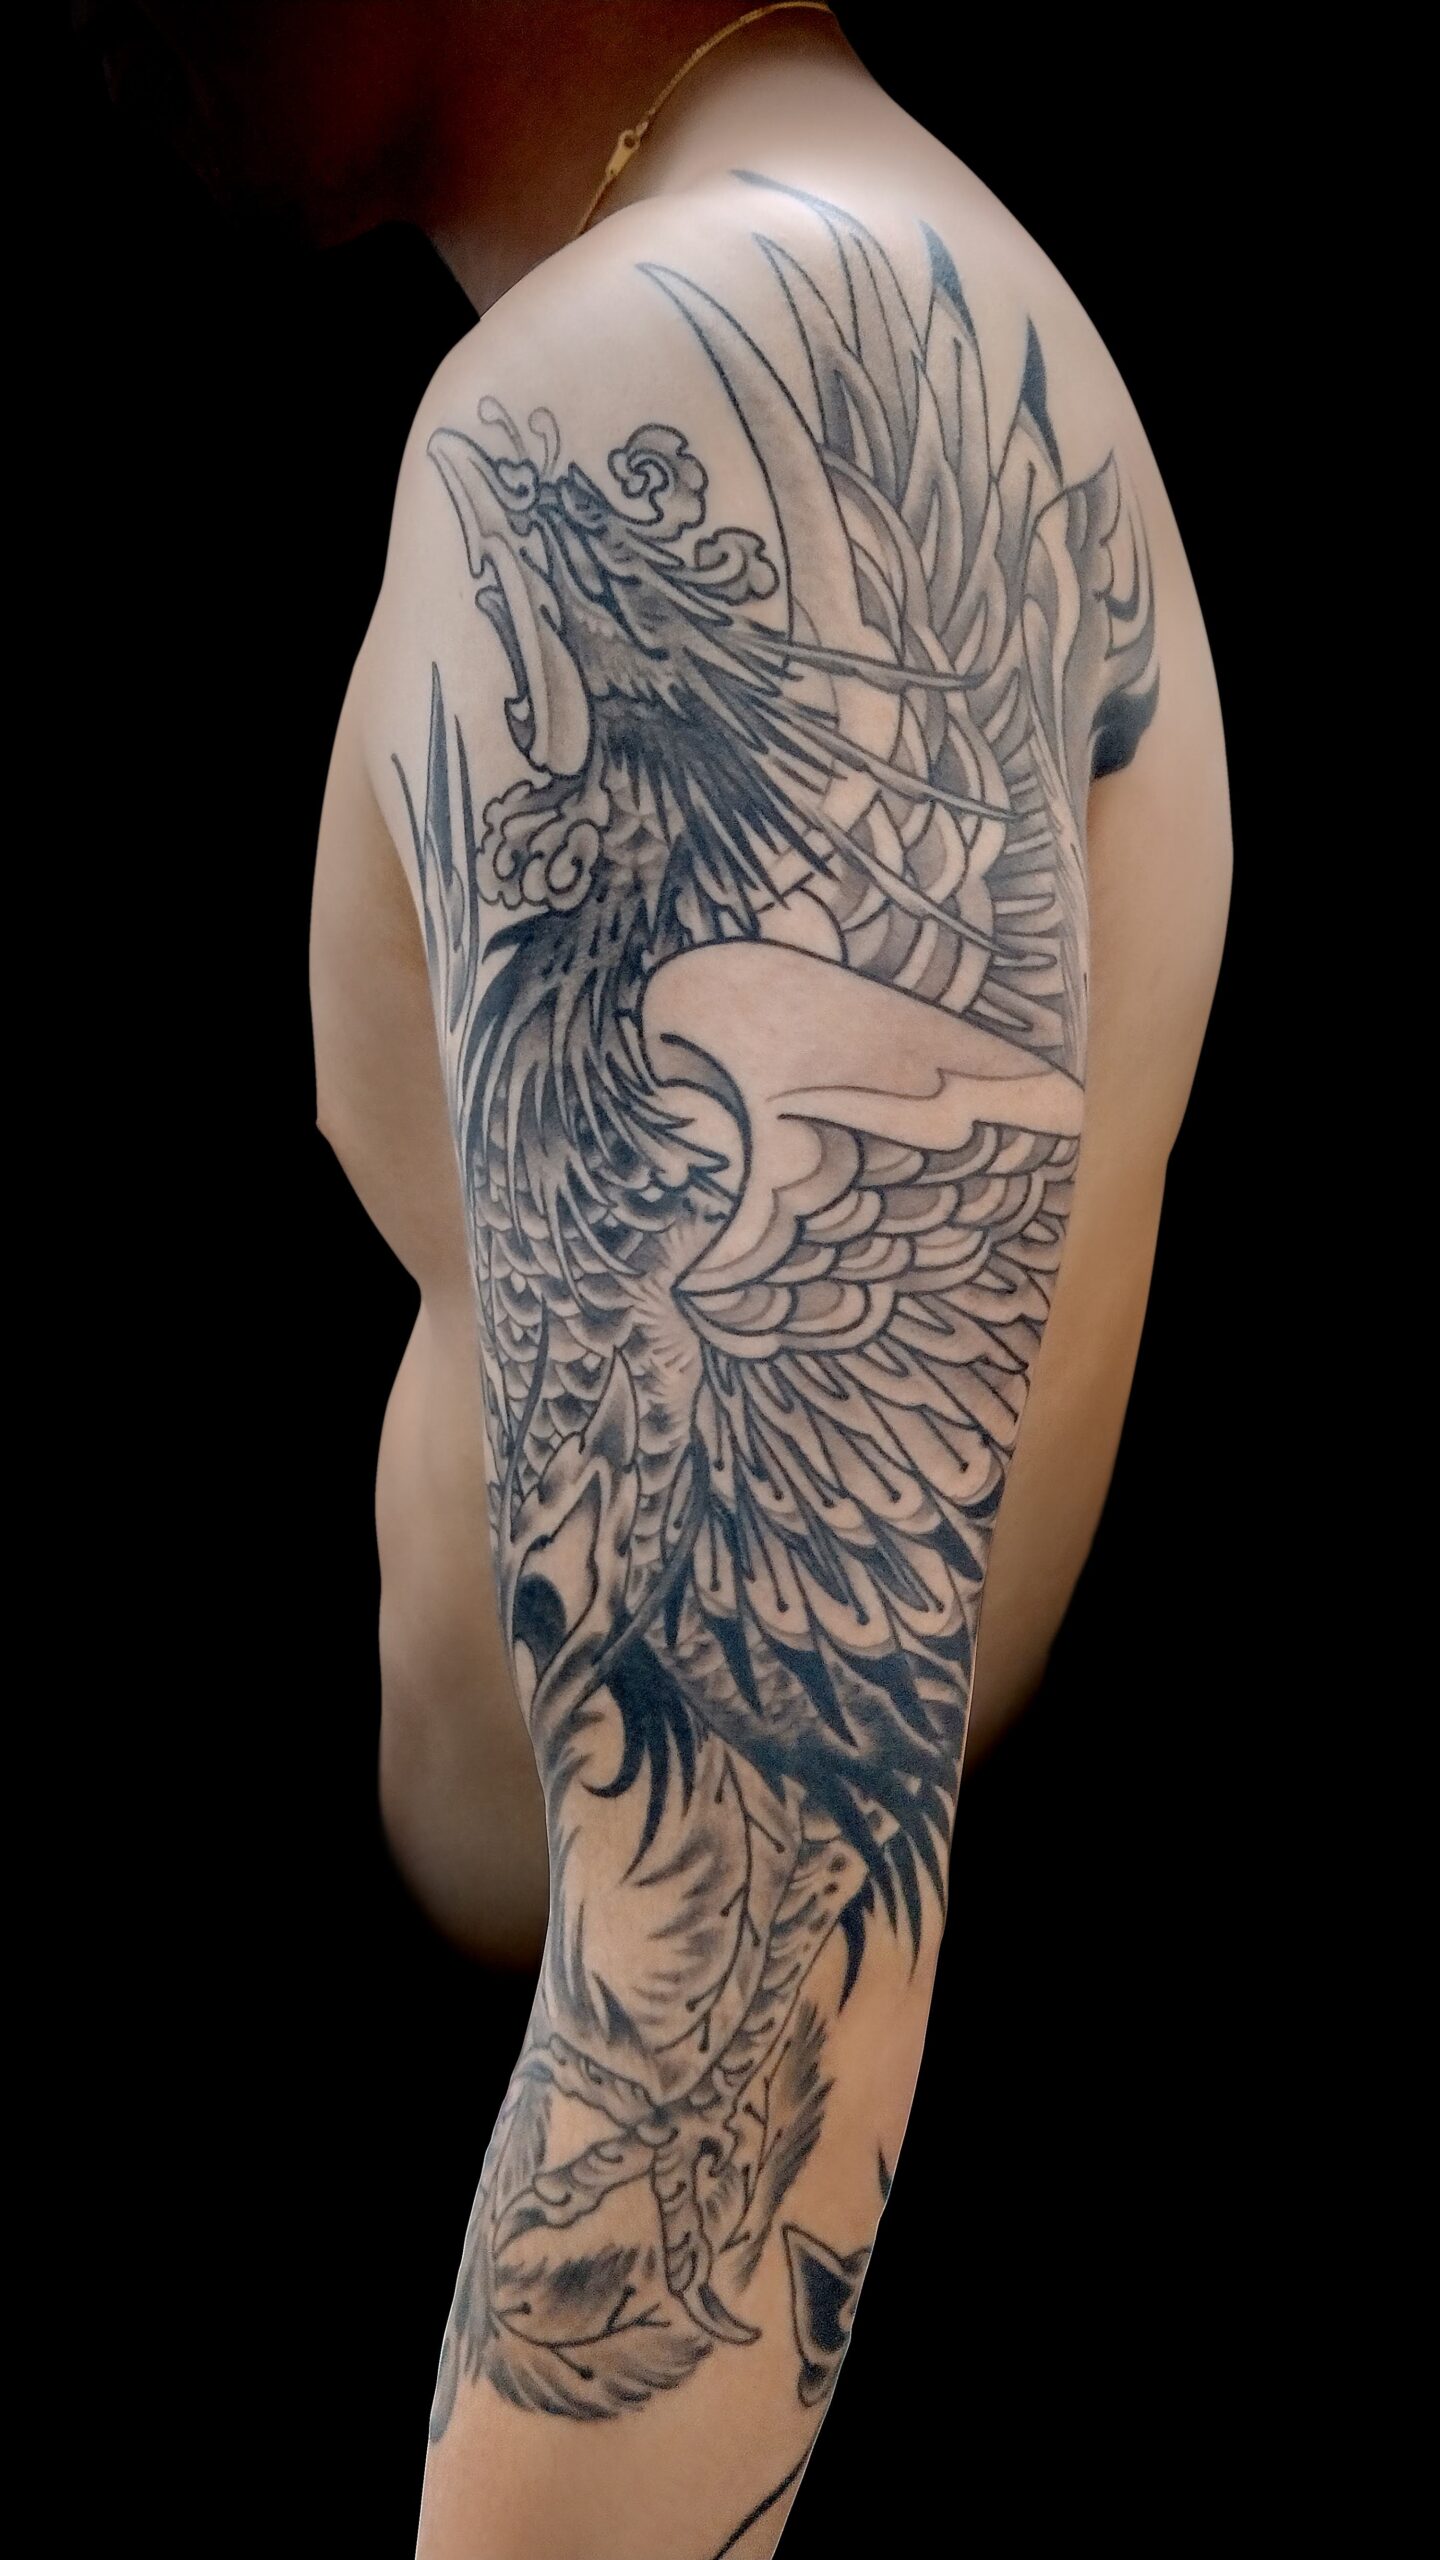 KINGRAT TATTOO 作品 | LAVA gallery | Tattoo artist: Yuji Anai | キングラット | ラバ | 福岡県北九州市 | phoenix04 202107